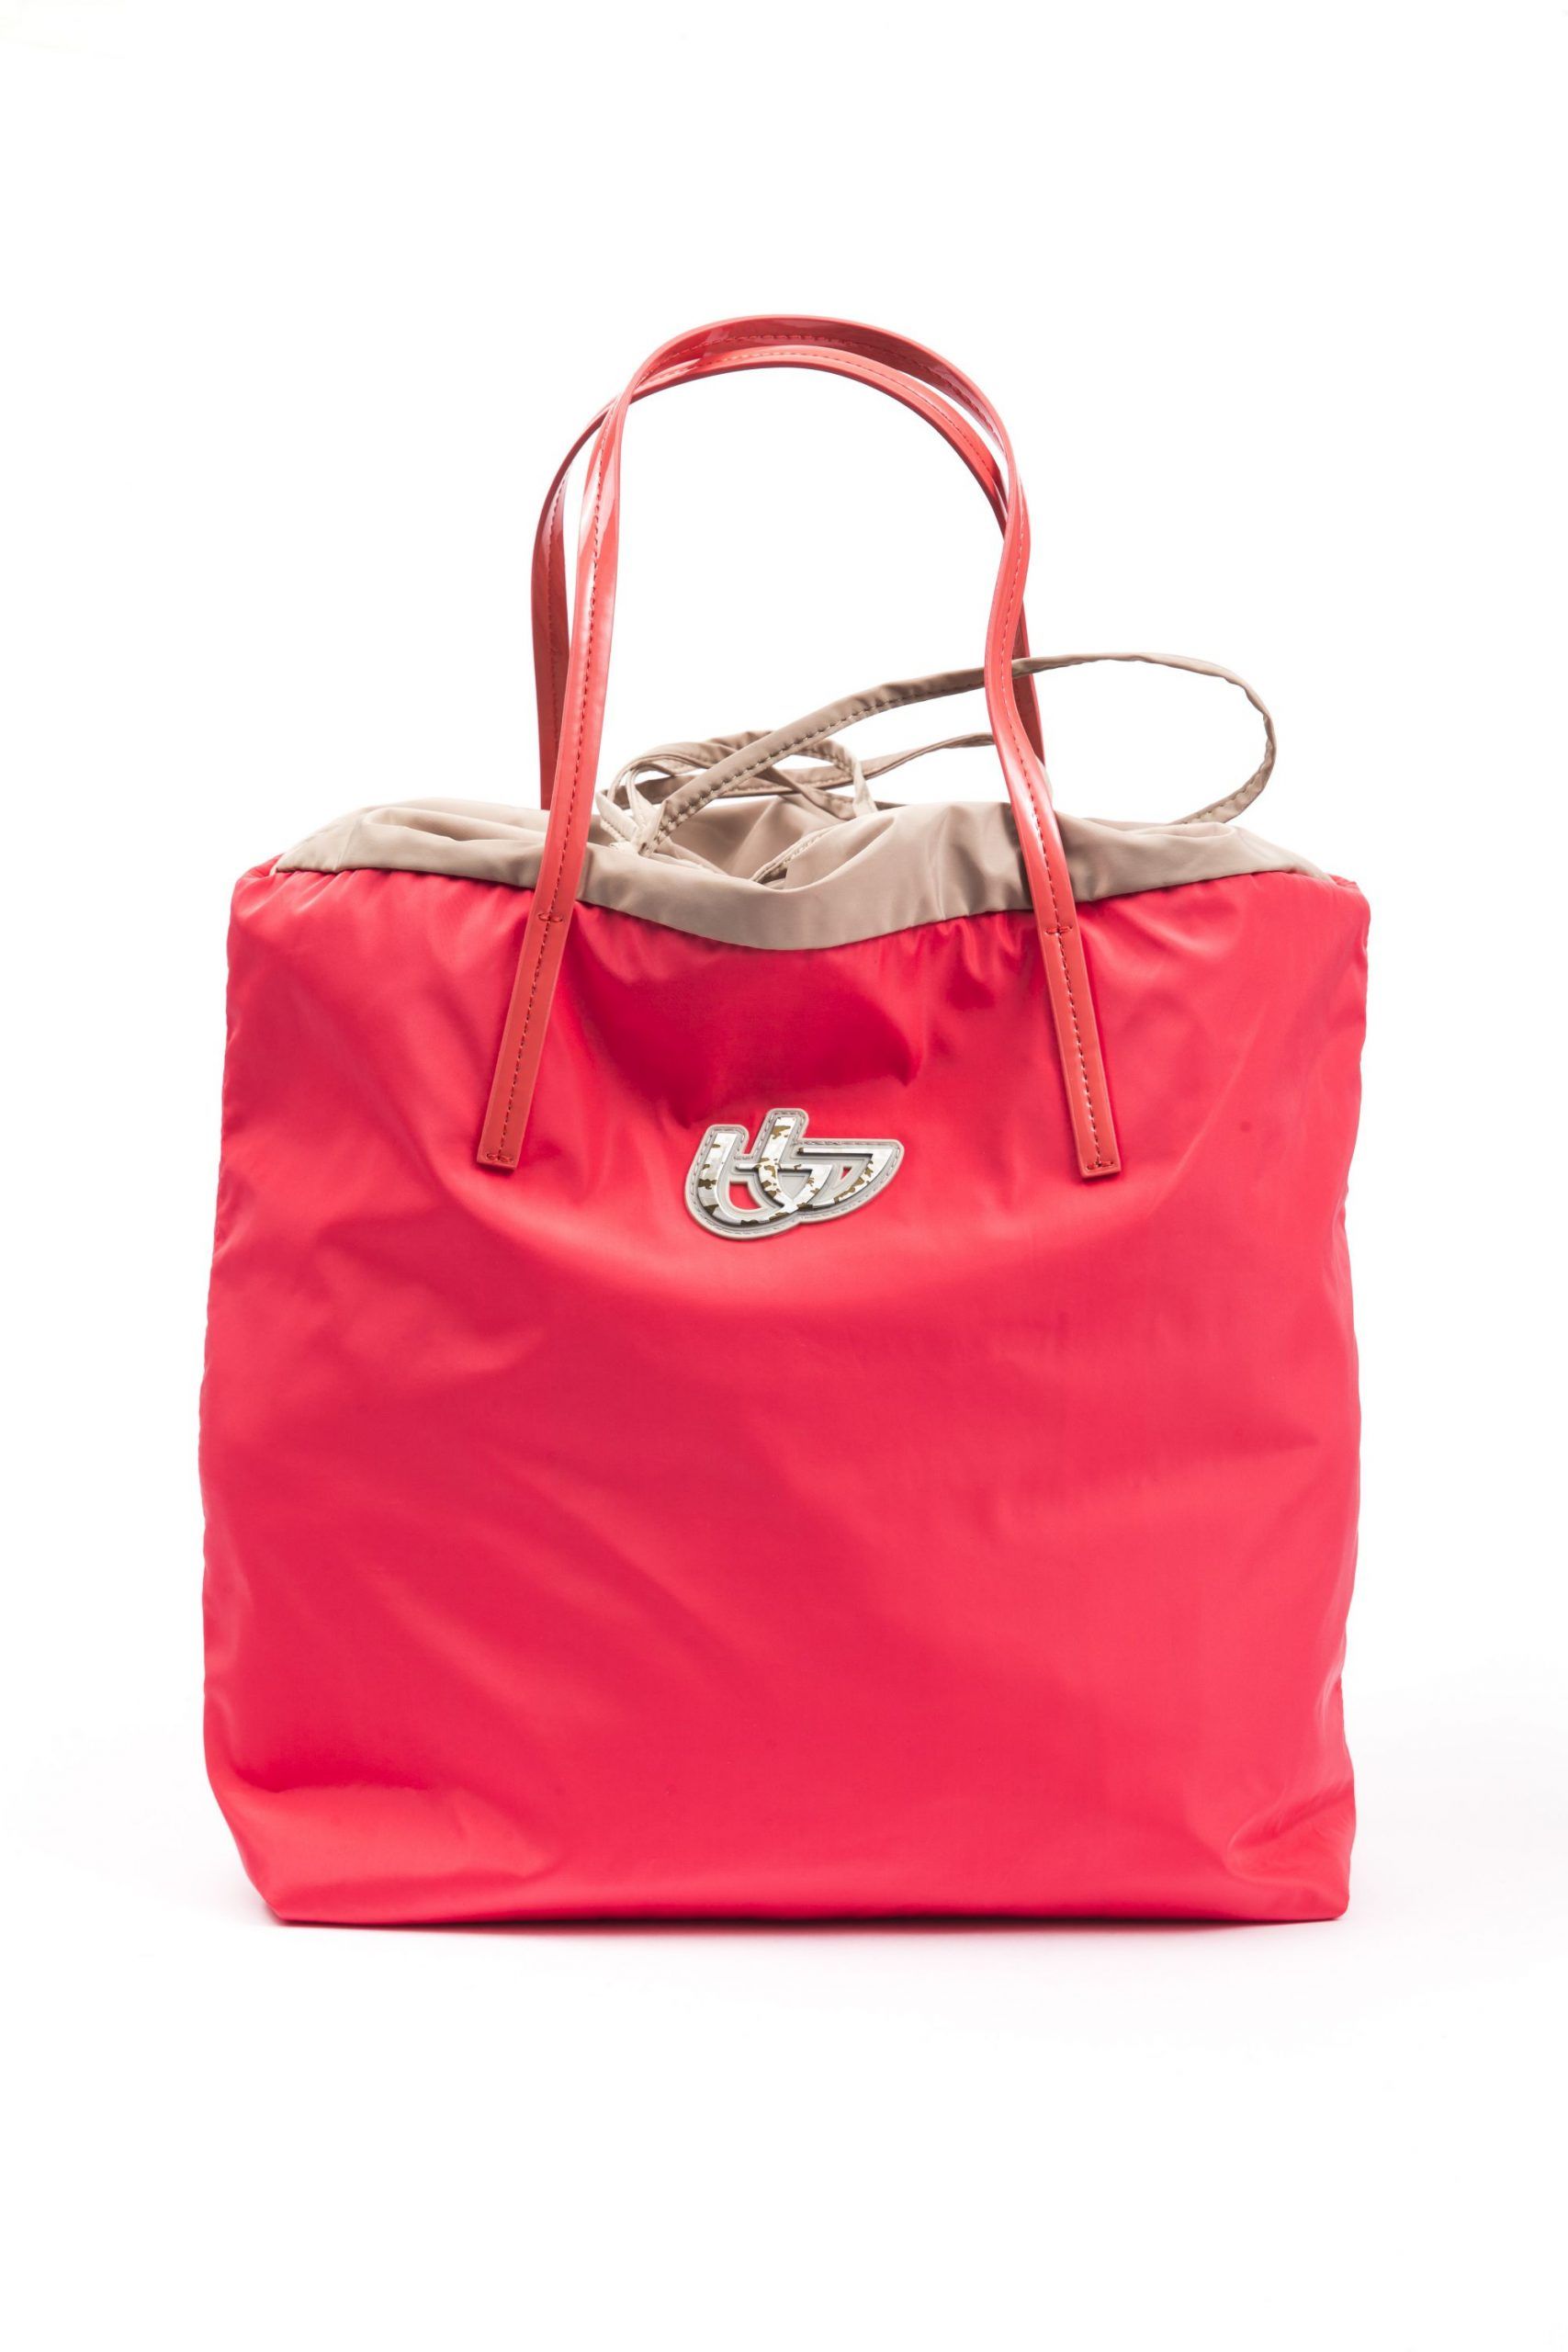 <p>Damen-Shopping-Handtasche aus Stoff und synthetischem Lackleder. Inklusive Staubbeutel mit Logo. Abmessungen: 36 cm x 16c m x 32 cm</p>